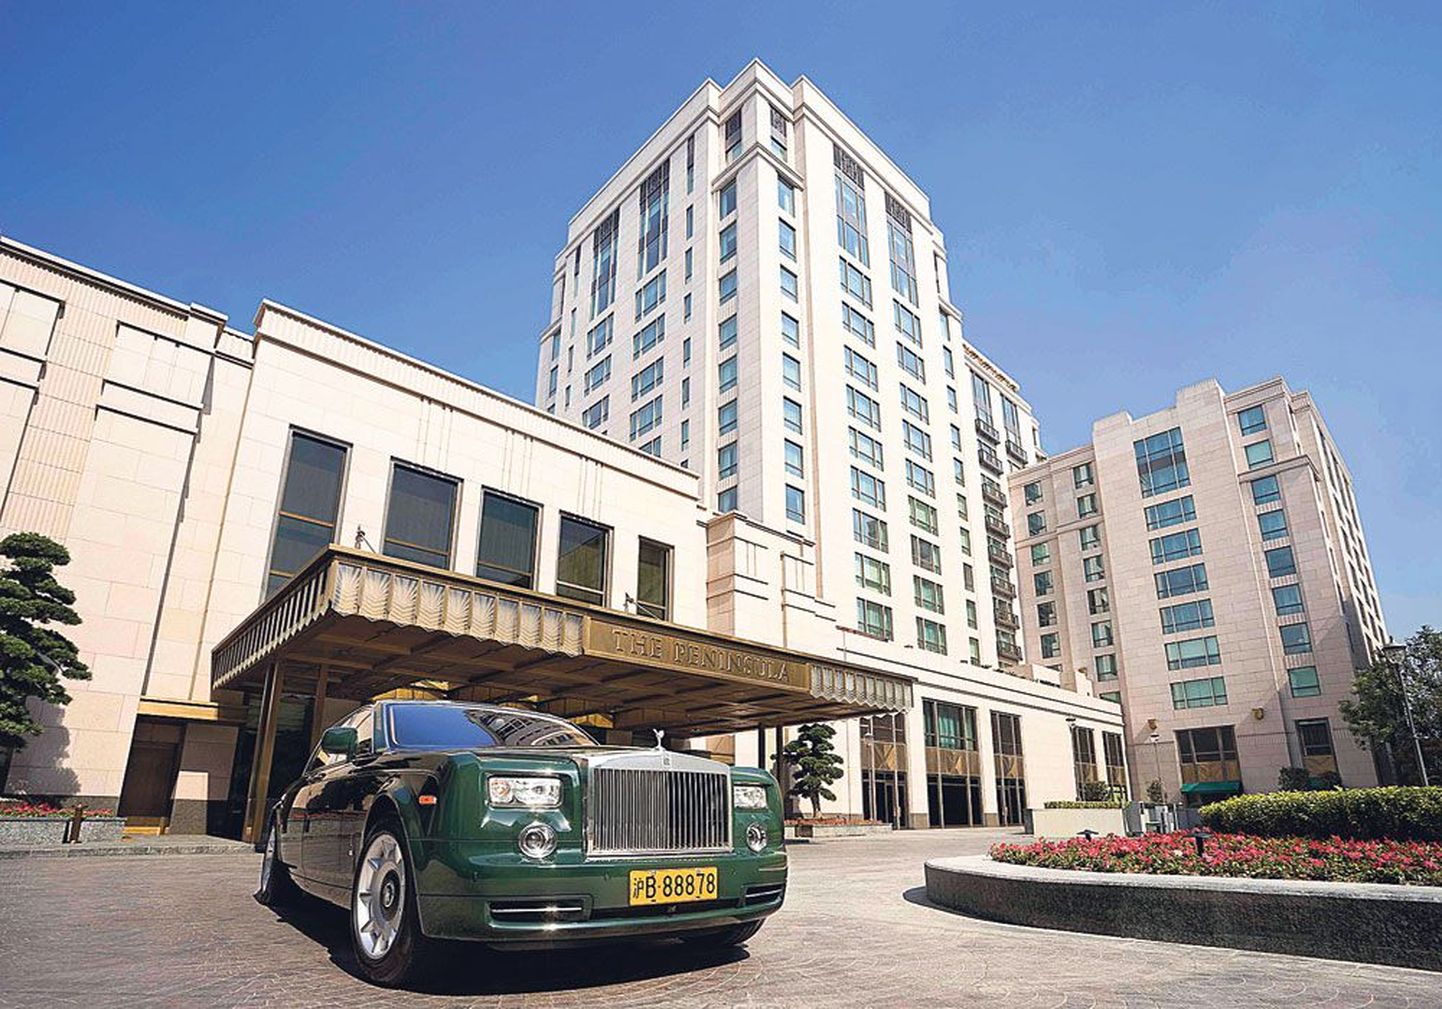 Пятизвездочный отель The Peninsula в Шанхае и Rolls-Royce для его постояльцев.